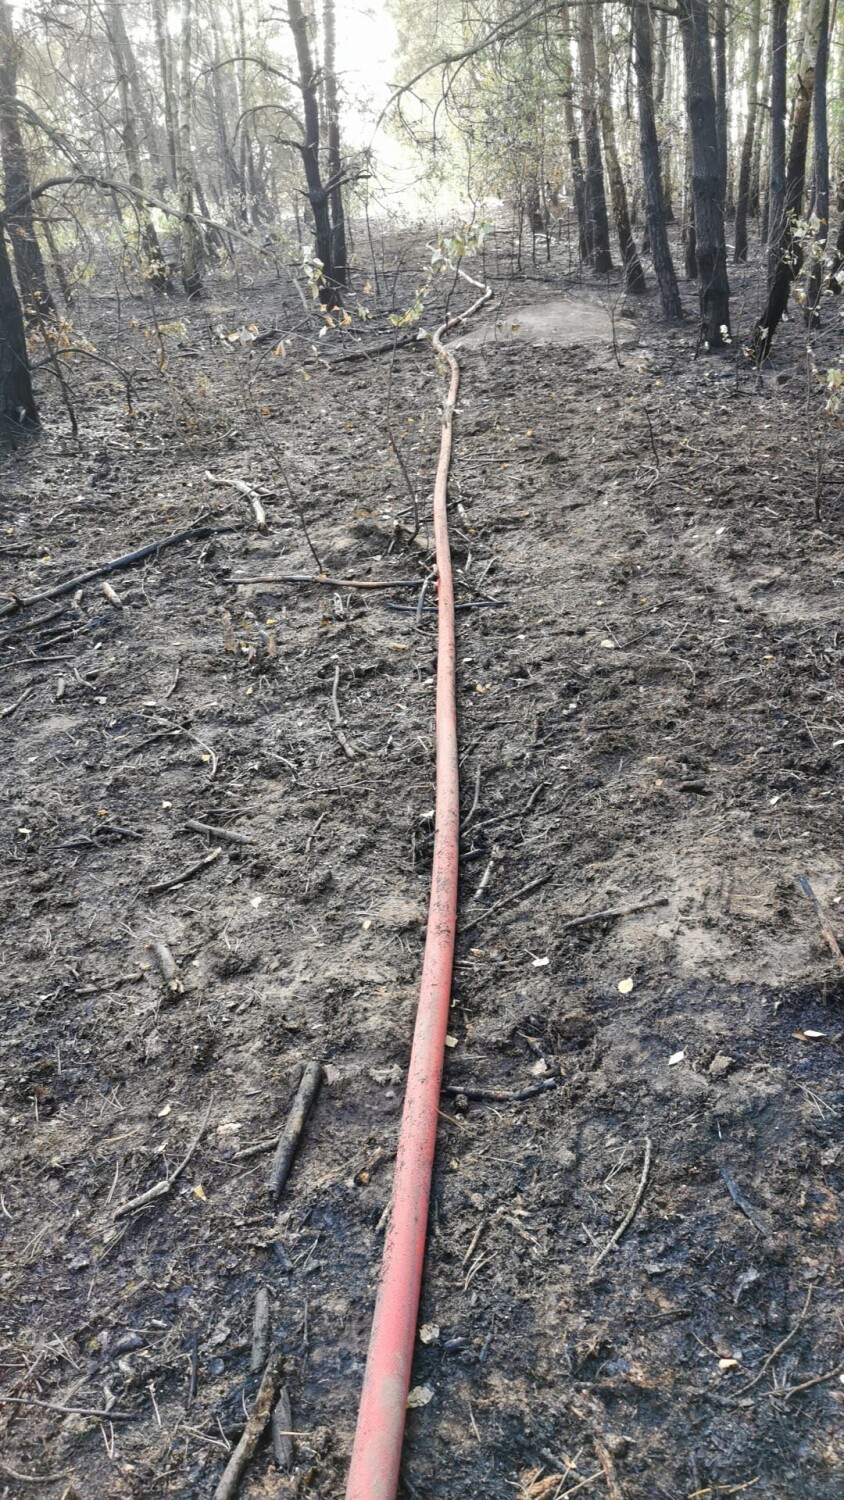 Pożar w gminie Dobryszyce. W Białej Górze płonęły nieużytki, ściernisko i las. ZDJĘCIA